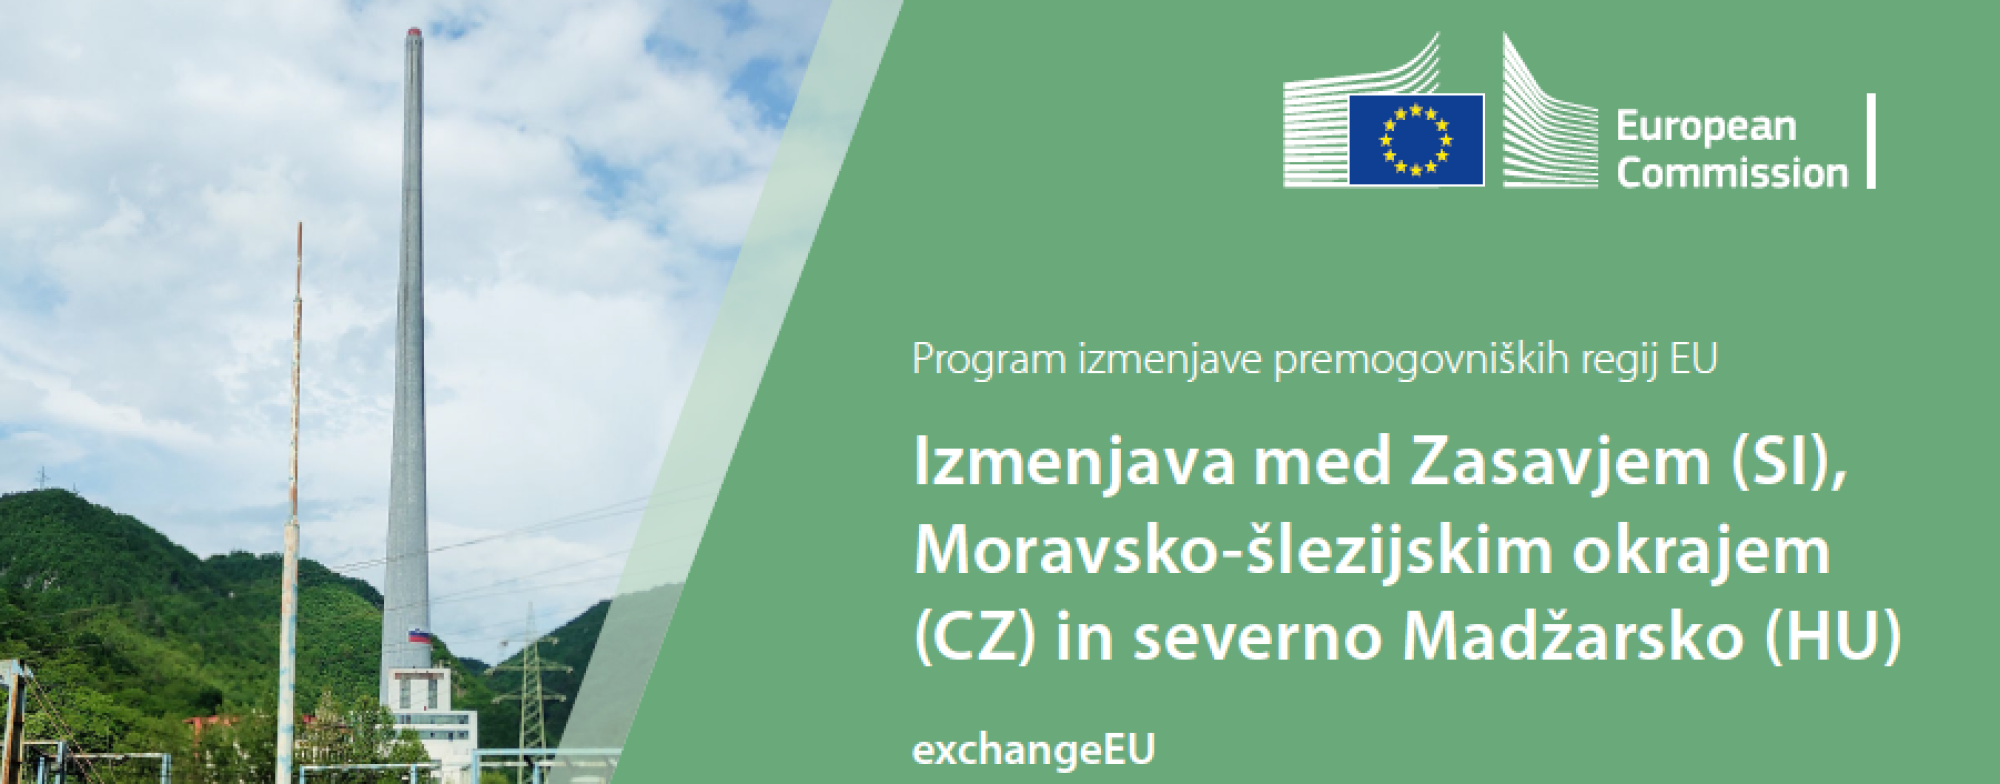 Program izmenjave premogovniških regij EU